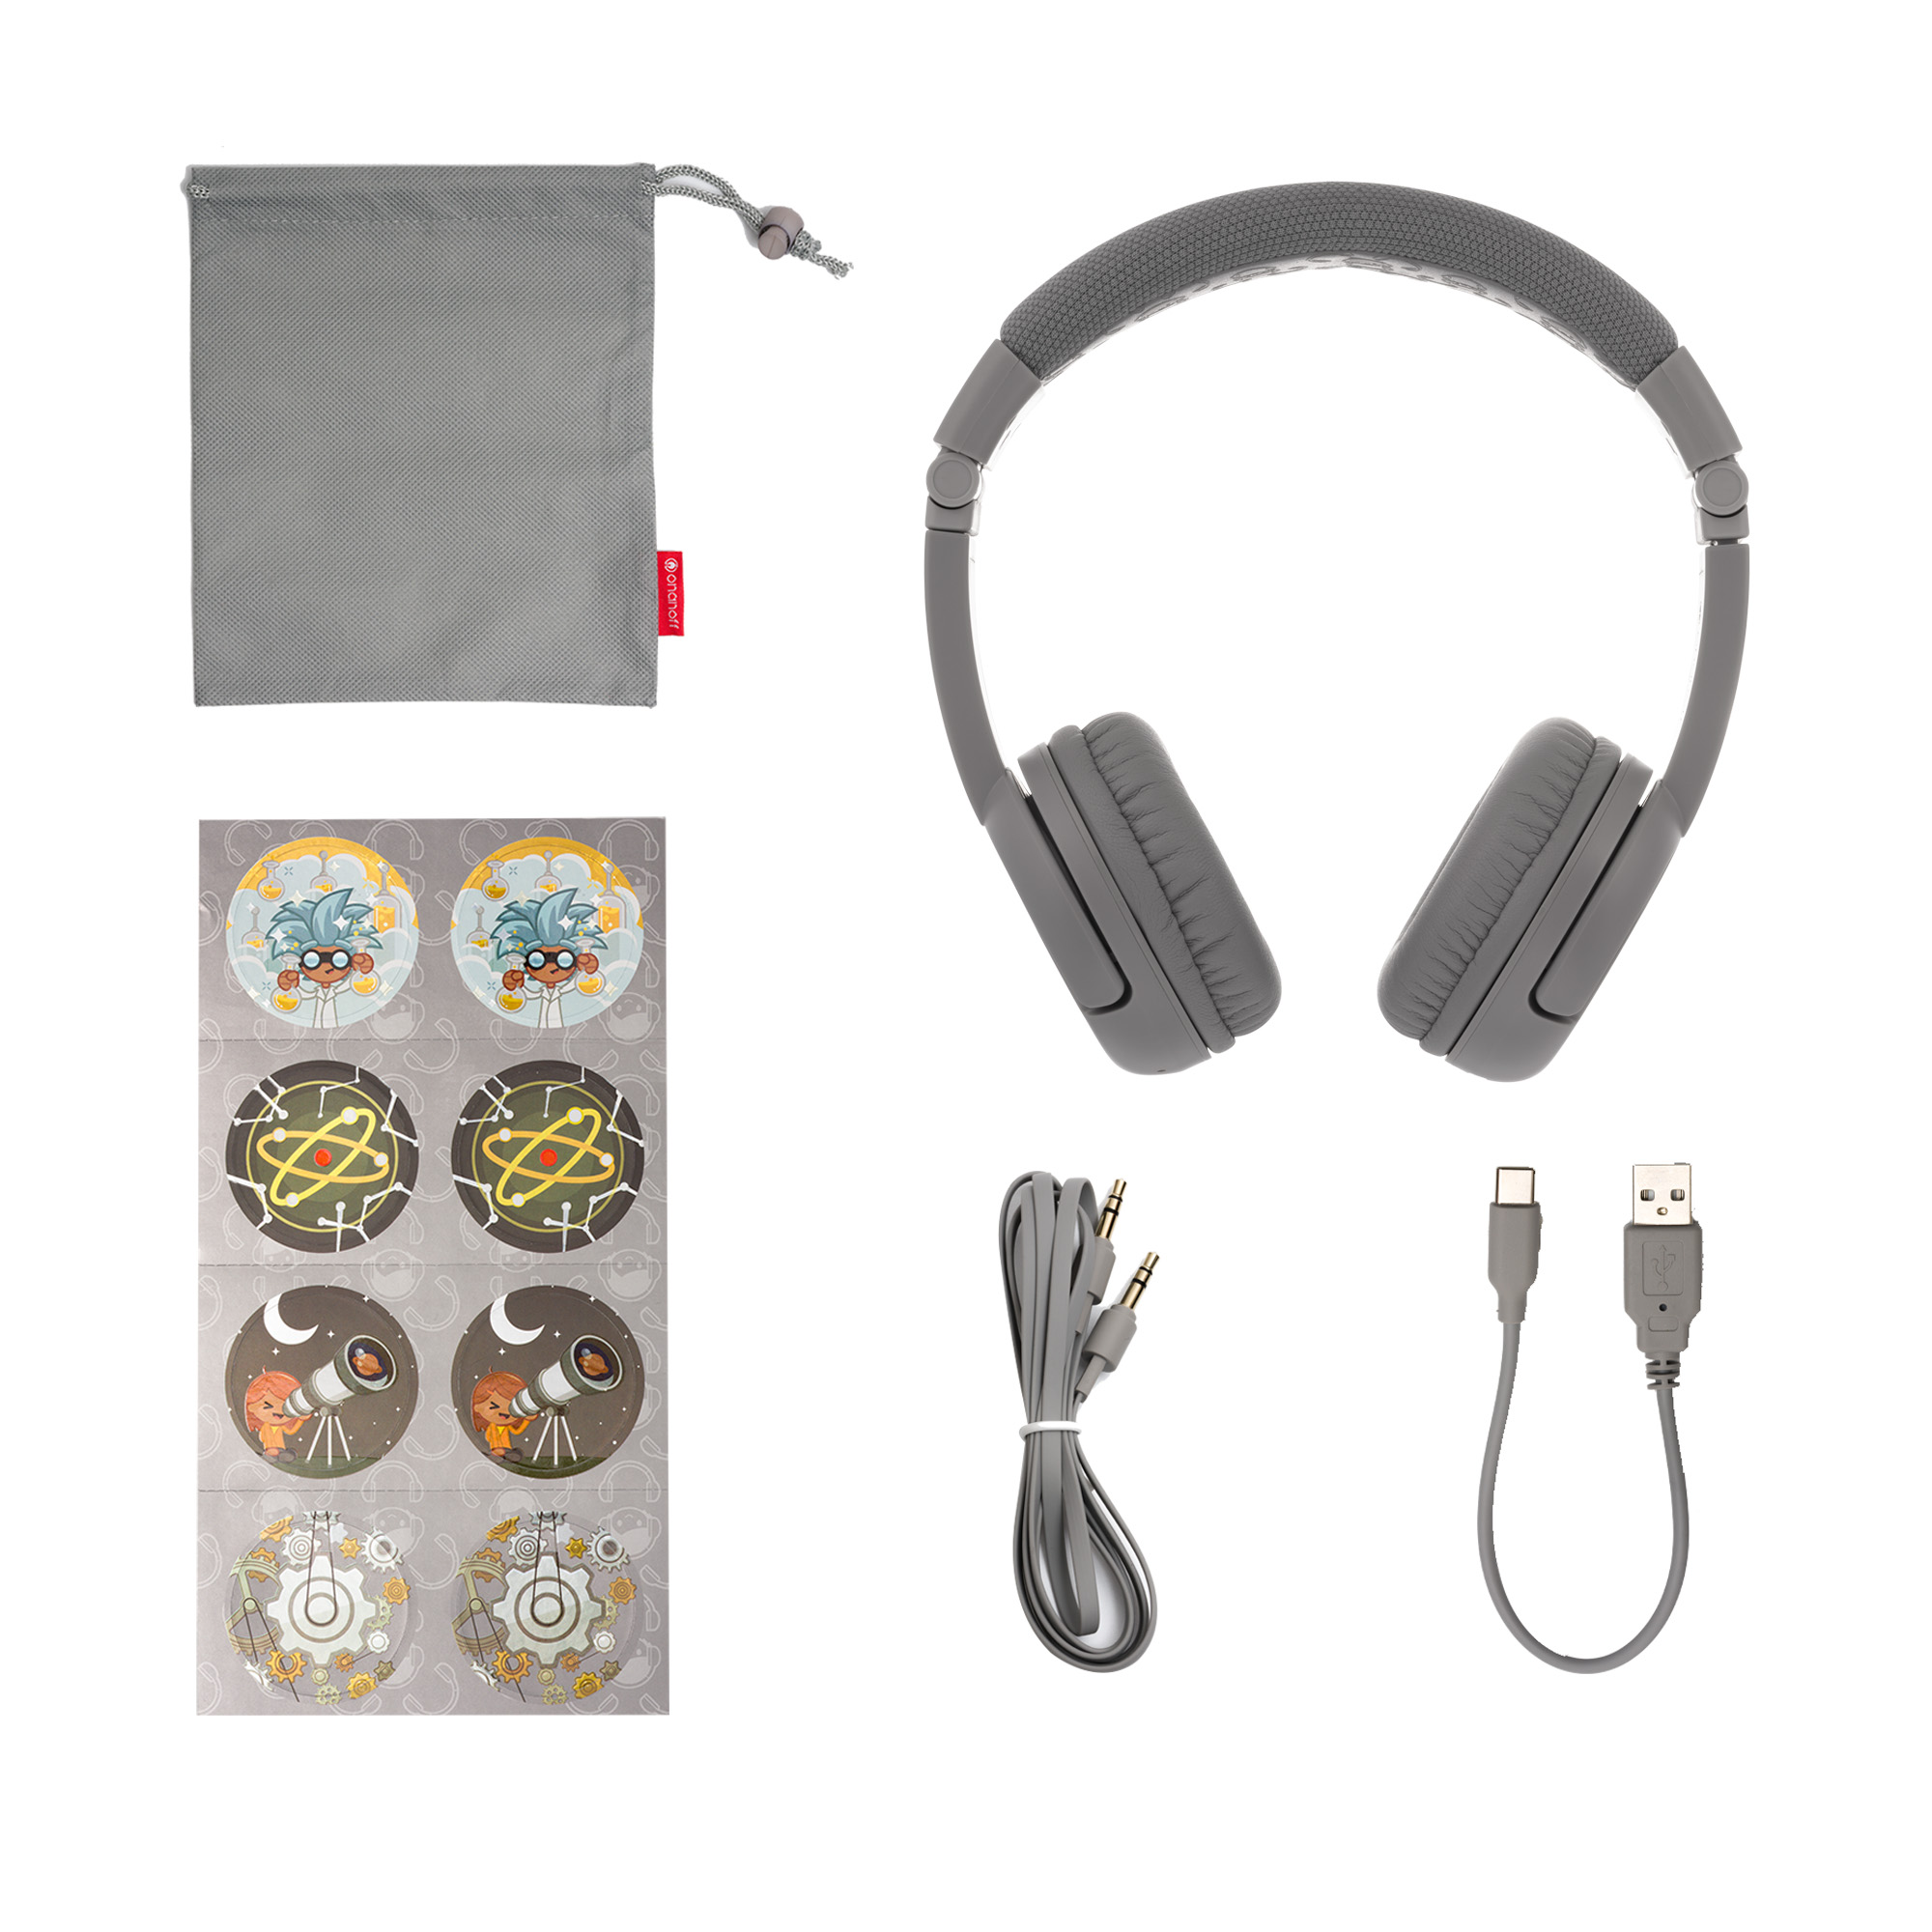 Bluetooth Plus, BUDDYPHONES On-ear Play Grau Kinder Kopfhörer